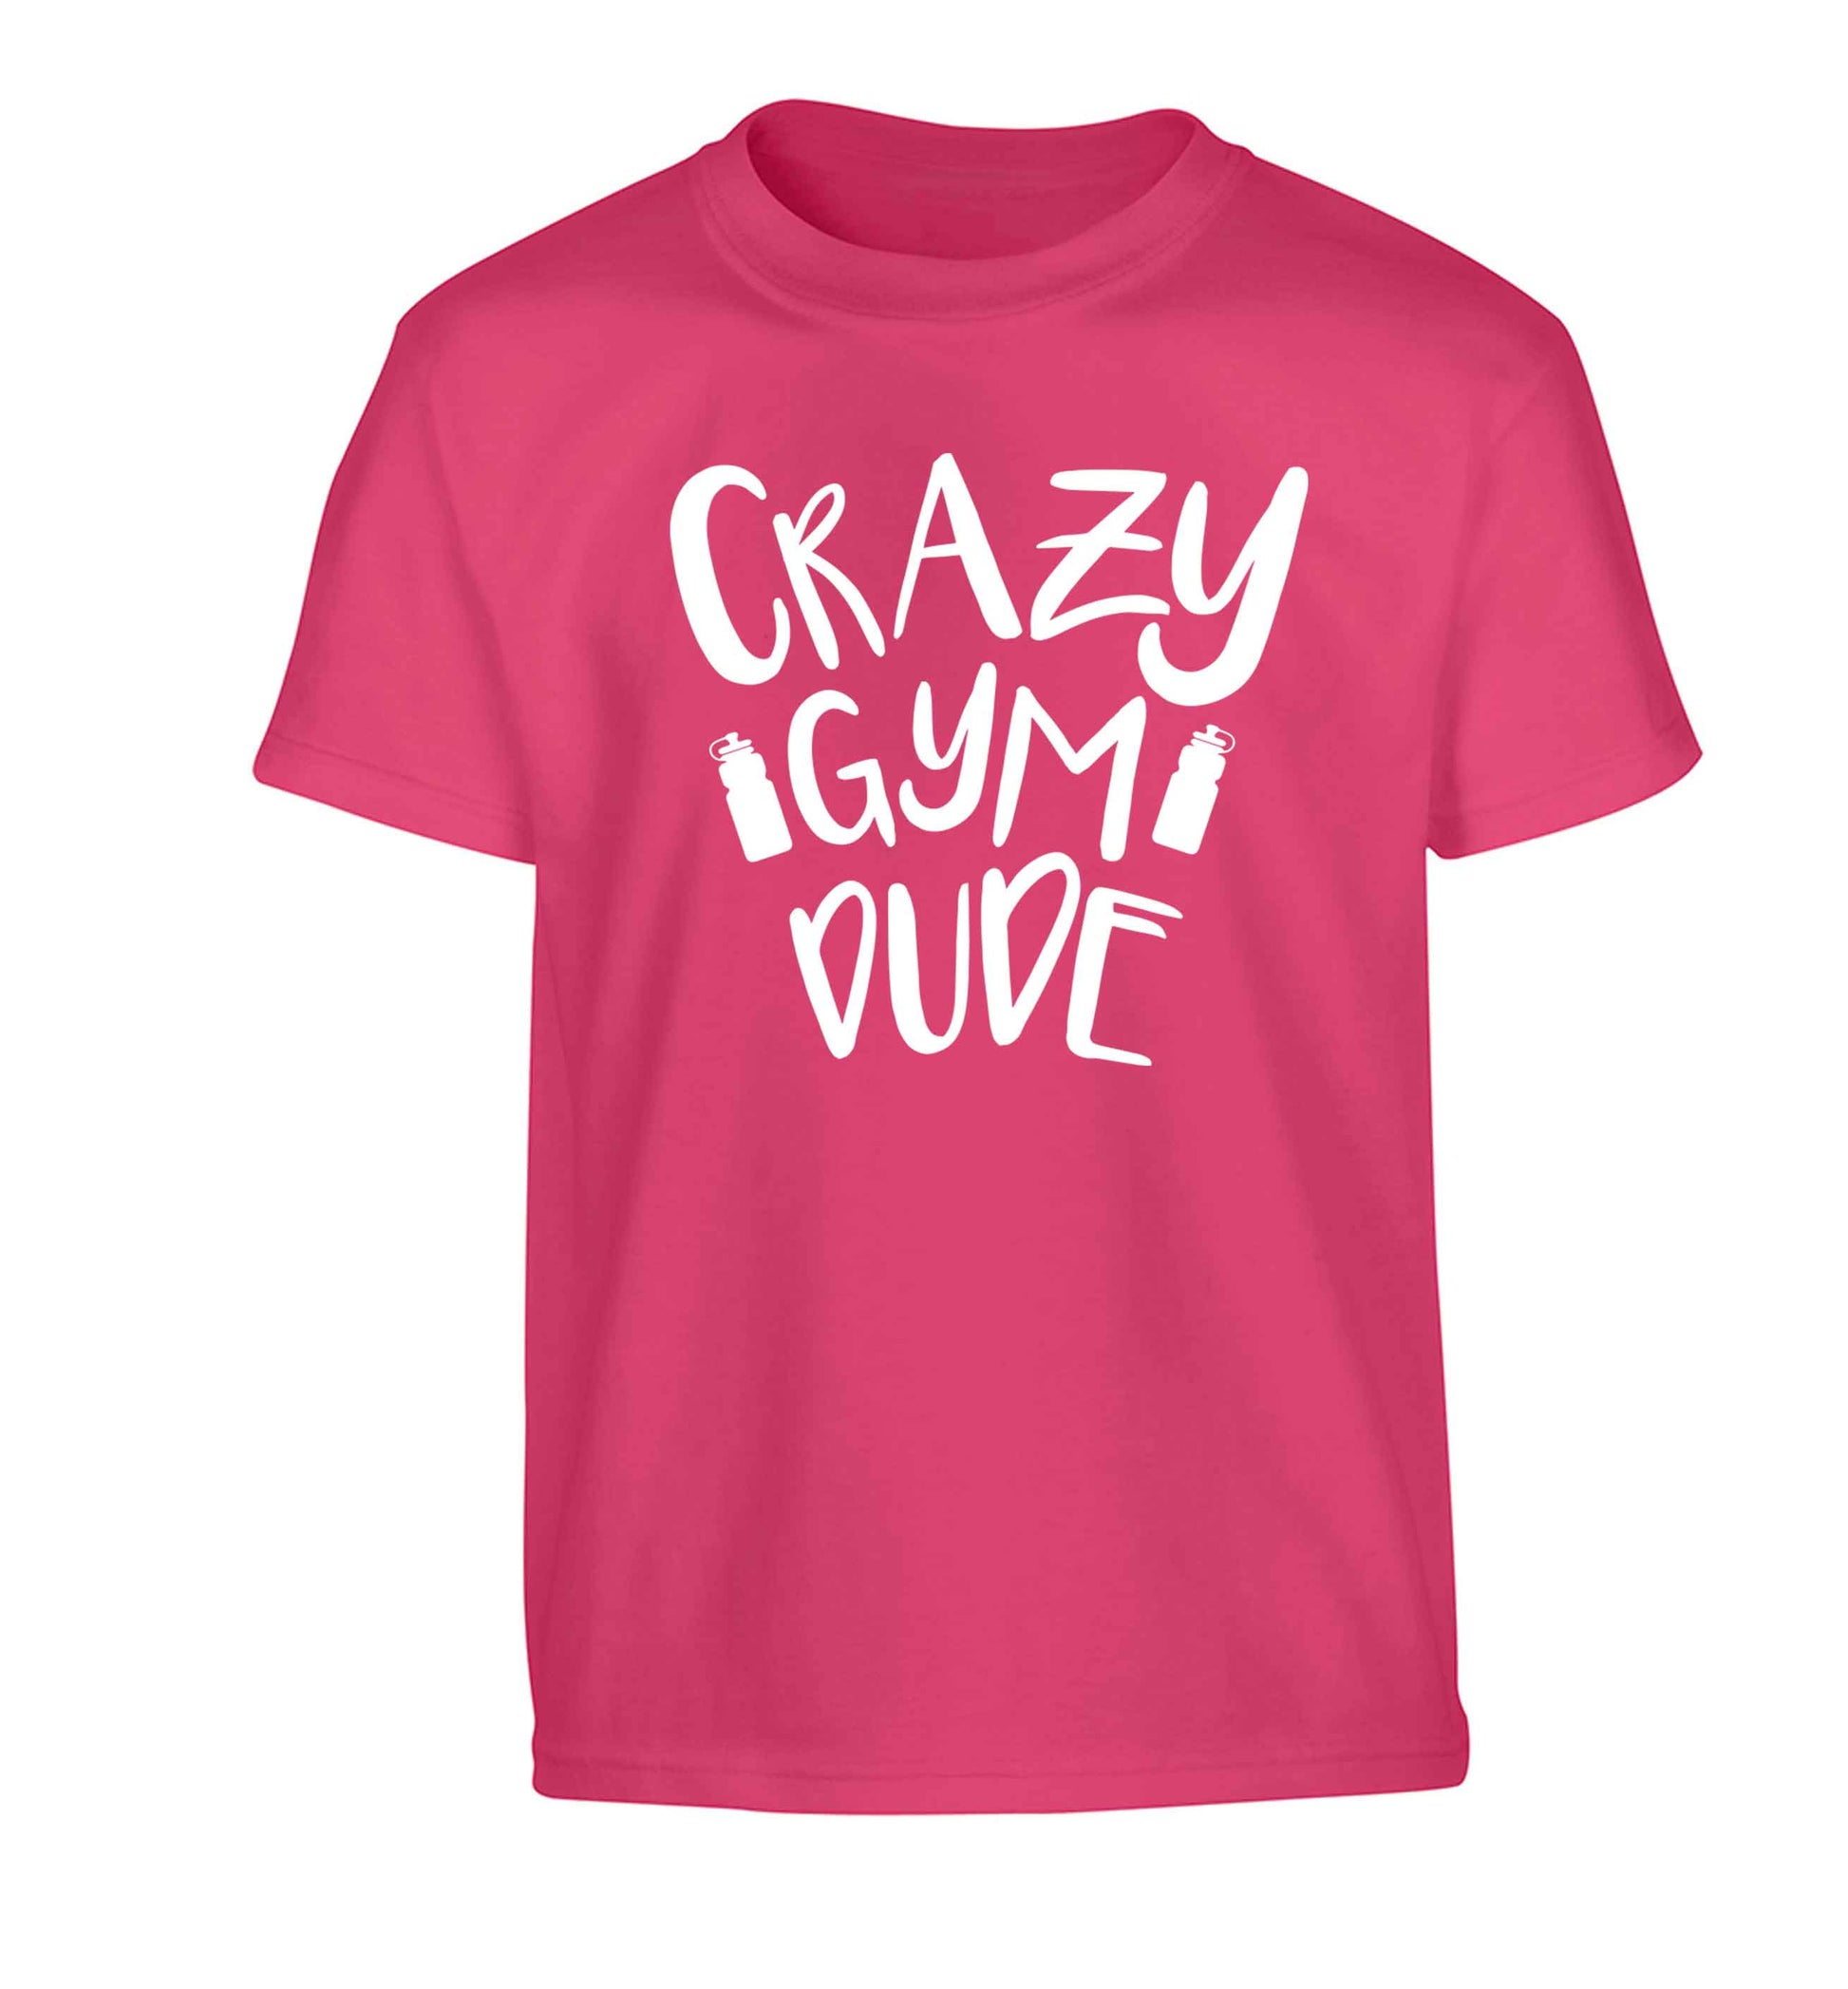 Crazy gym dude Children's pink Tshirt 12-13 Years